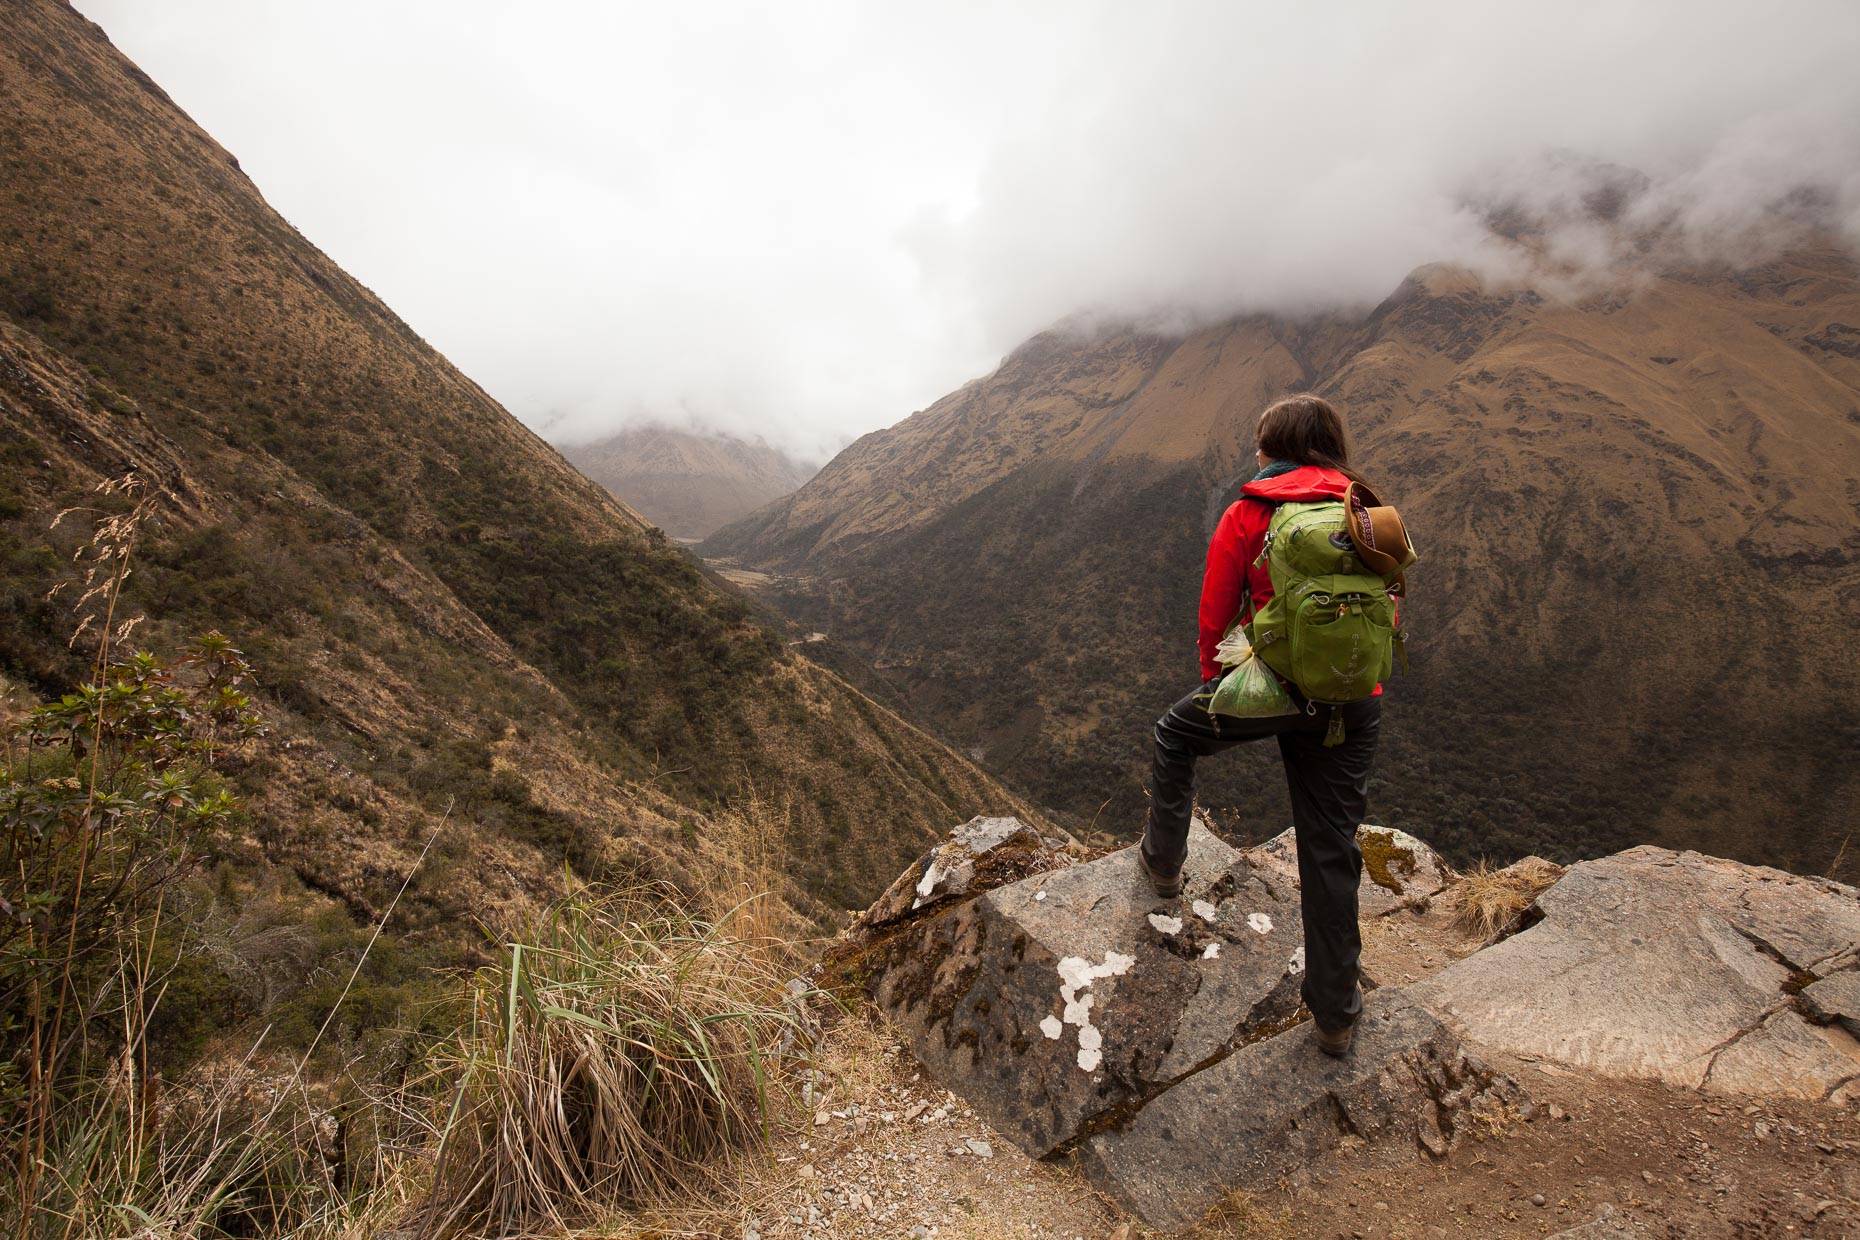 Salkantay Trek, Peru